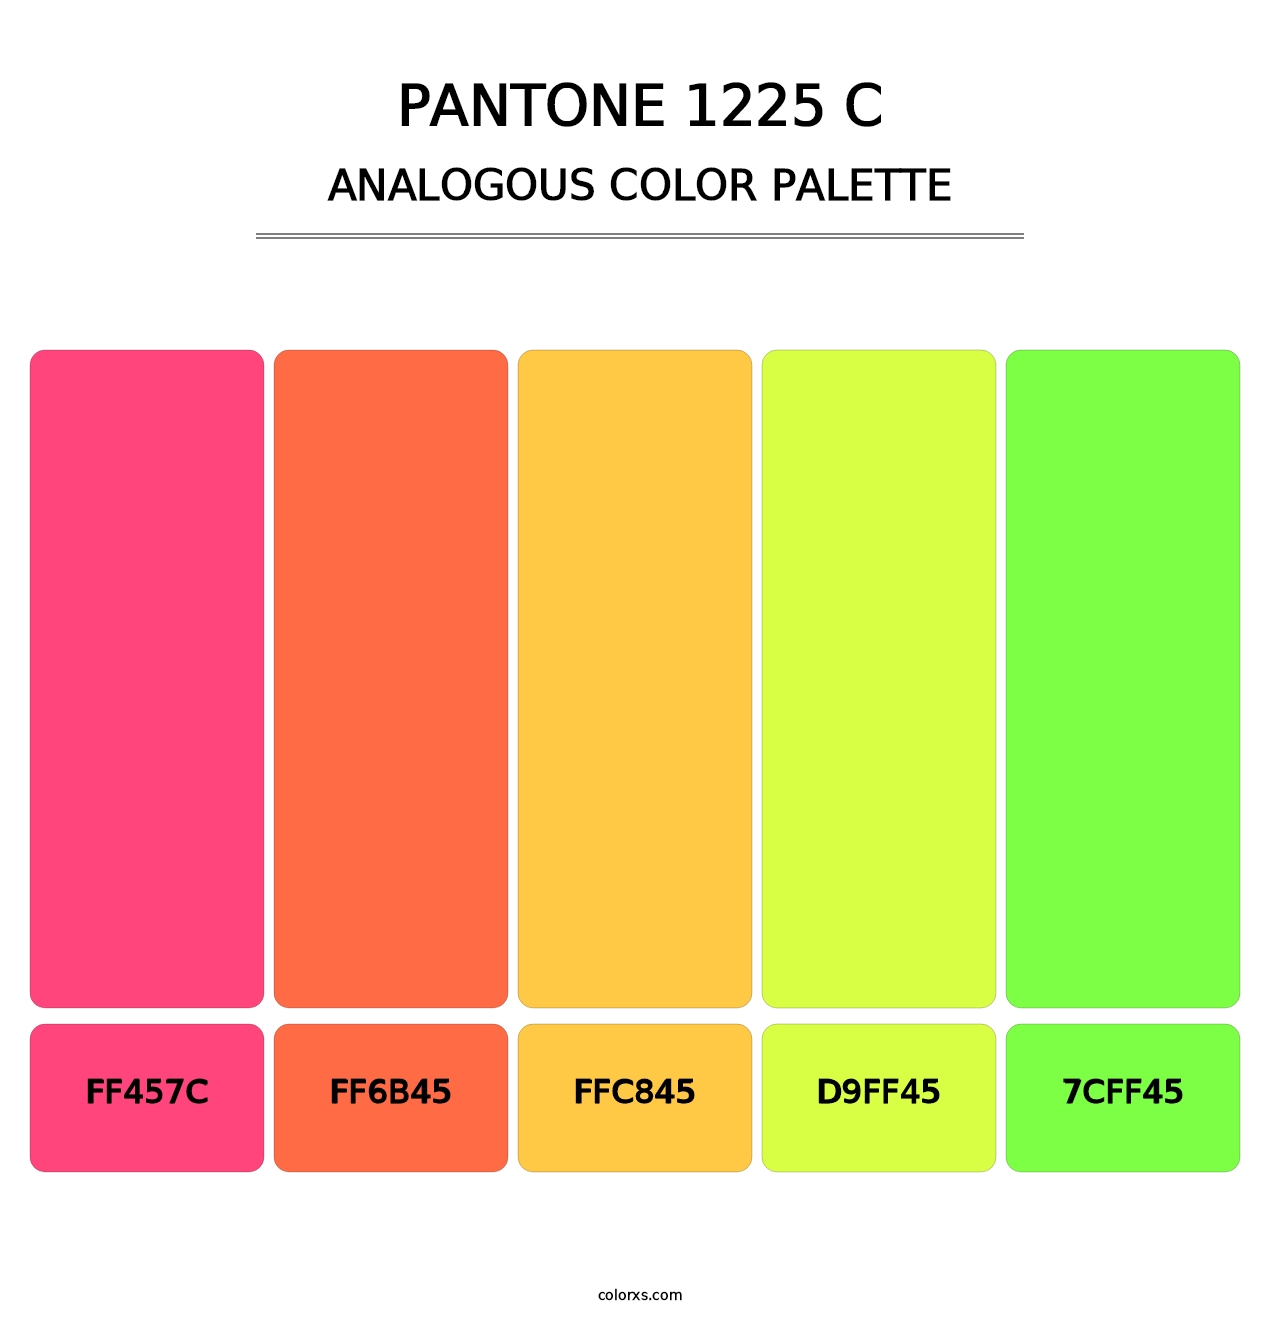 PANTONE 1225 C - Analogous Color Palette